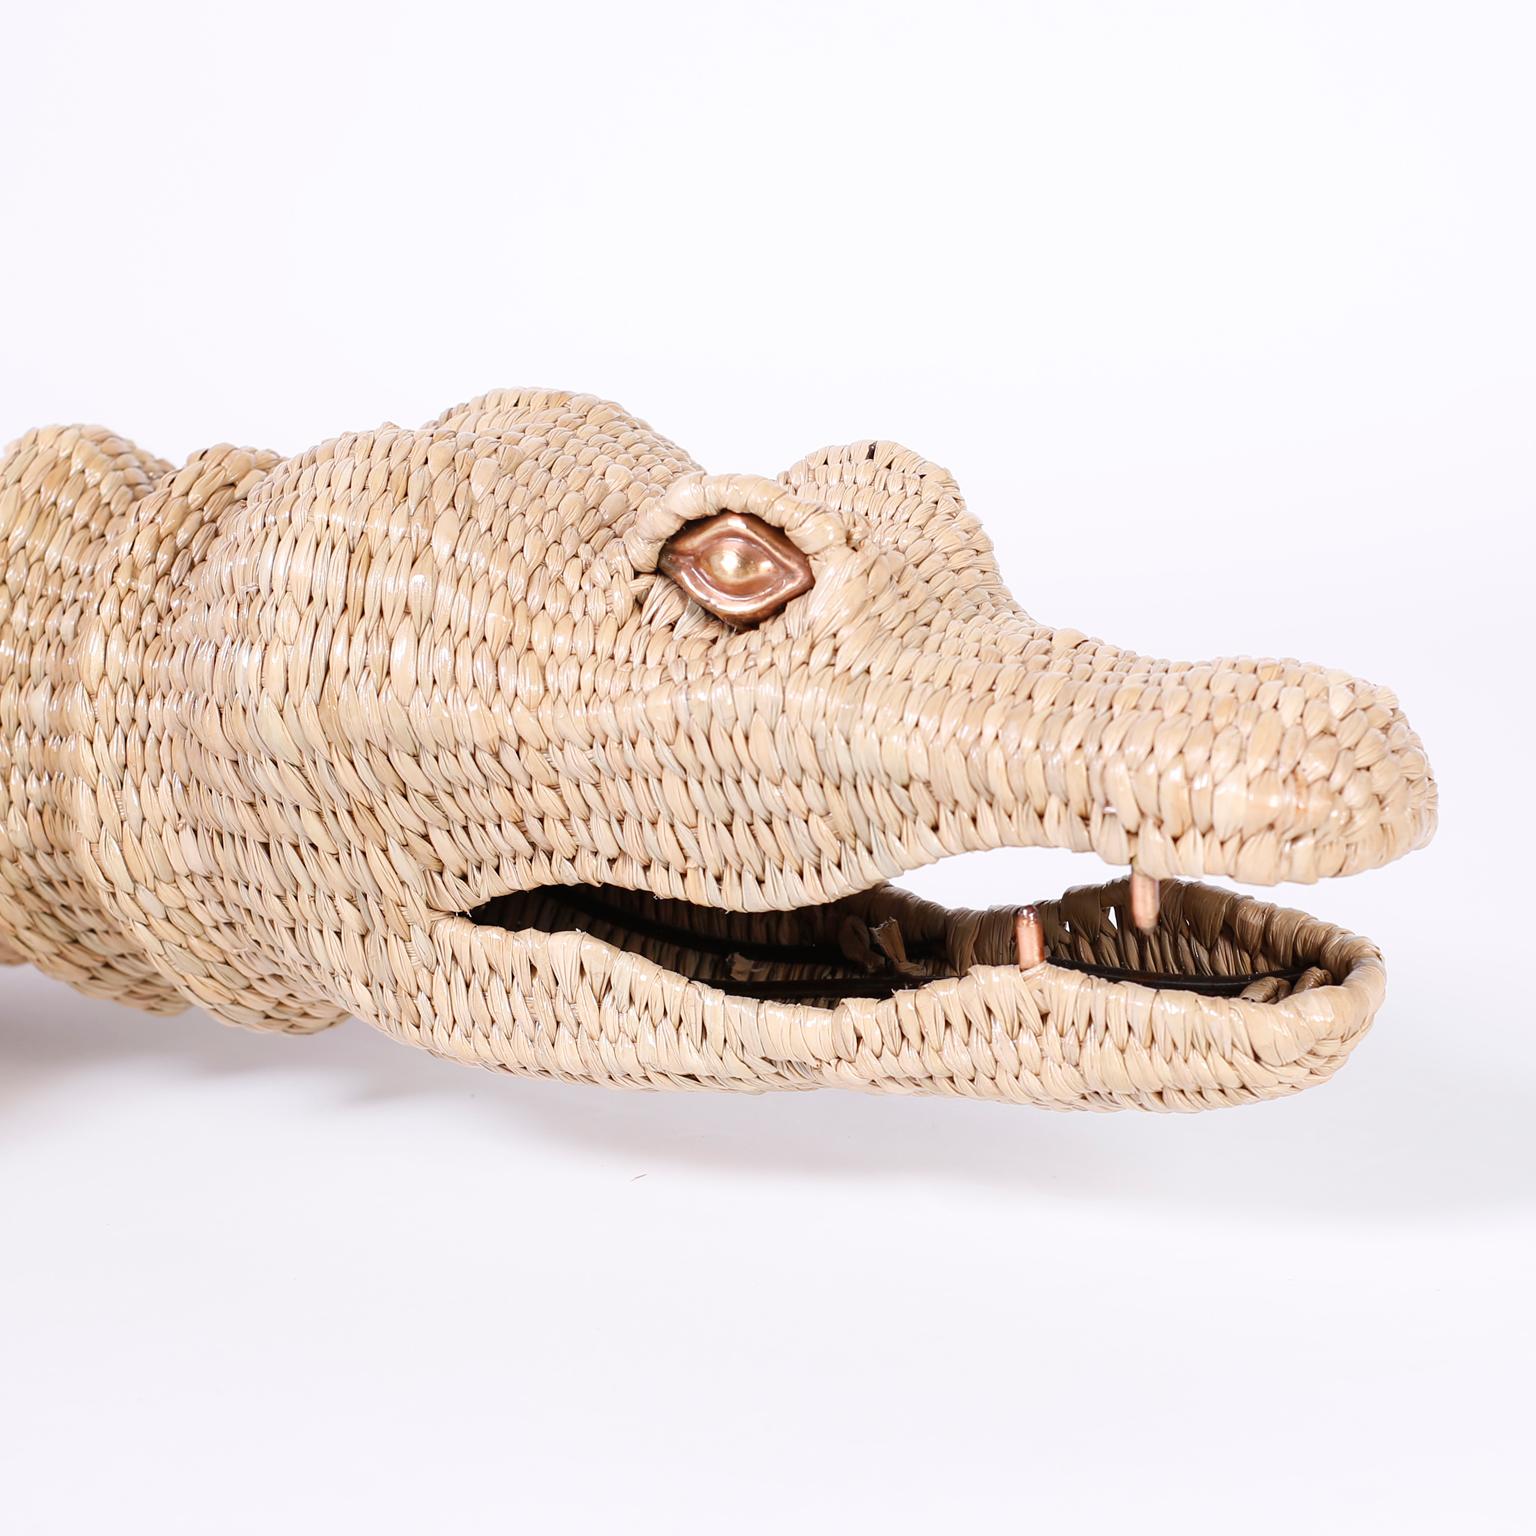 Folk Art Large Wicker Alligator